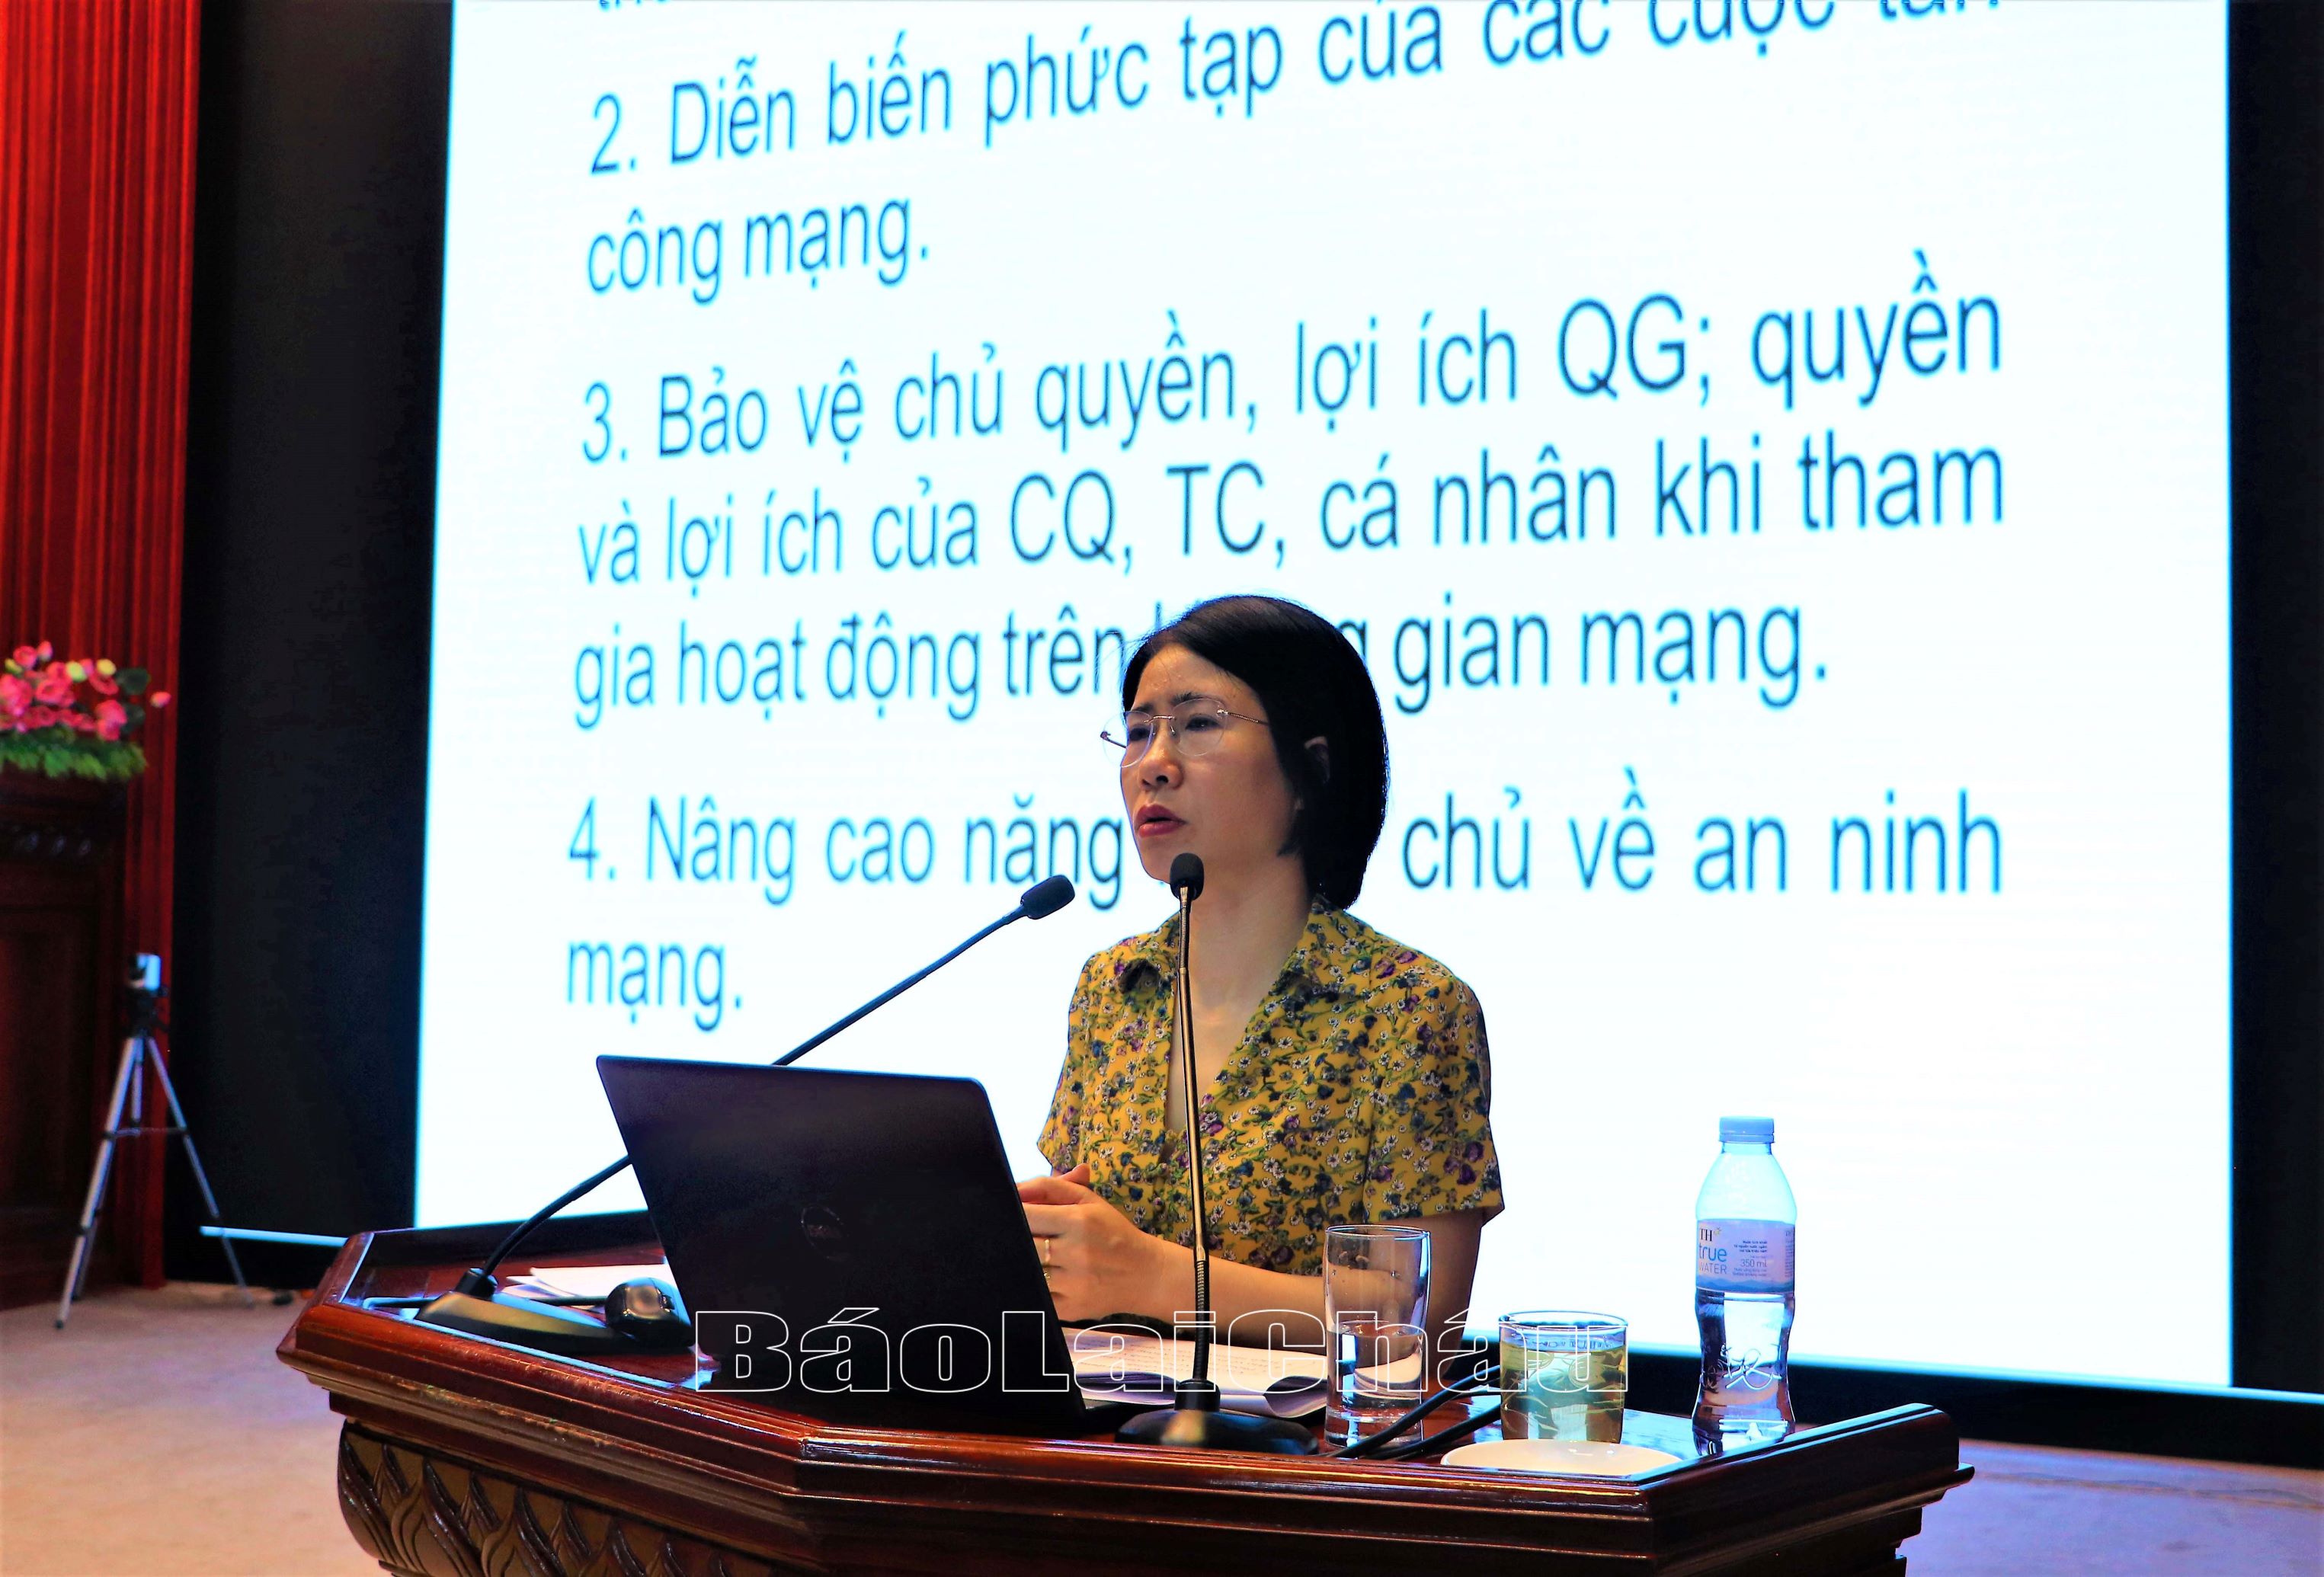 Đồng chí Lê Thị Vân Anh, Phó Vụ trưởng Vụ Pháp luật Hình sự - Hành chính (Bộ Tư pháp) phổ biển các nội dung tại hội nghị.